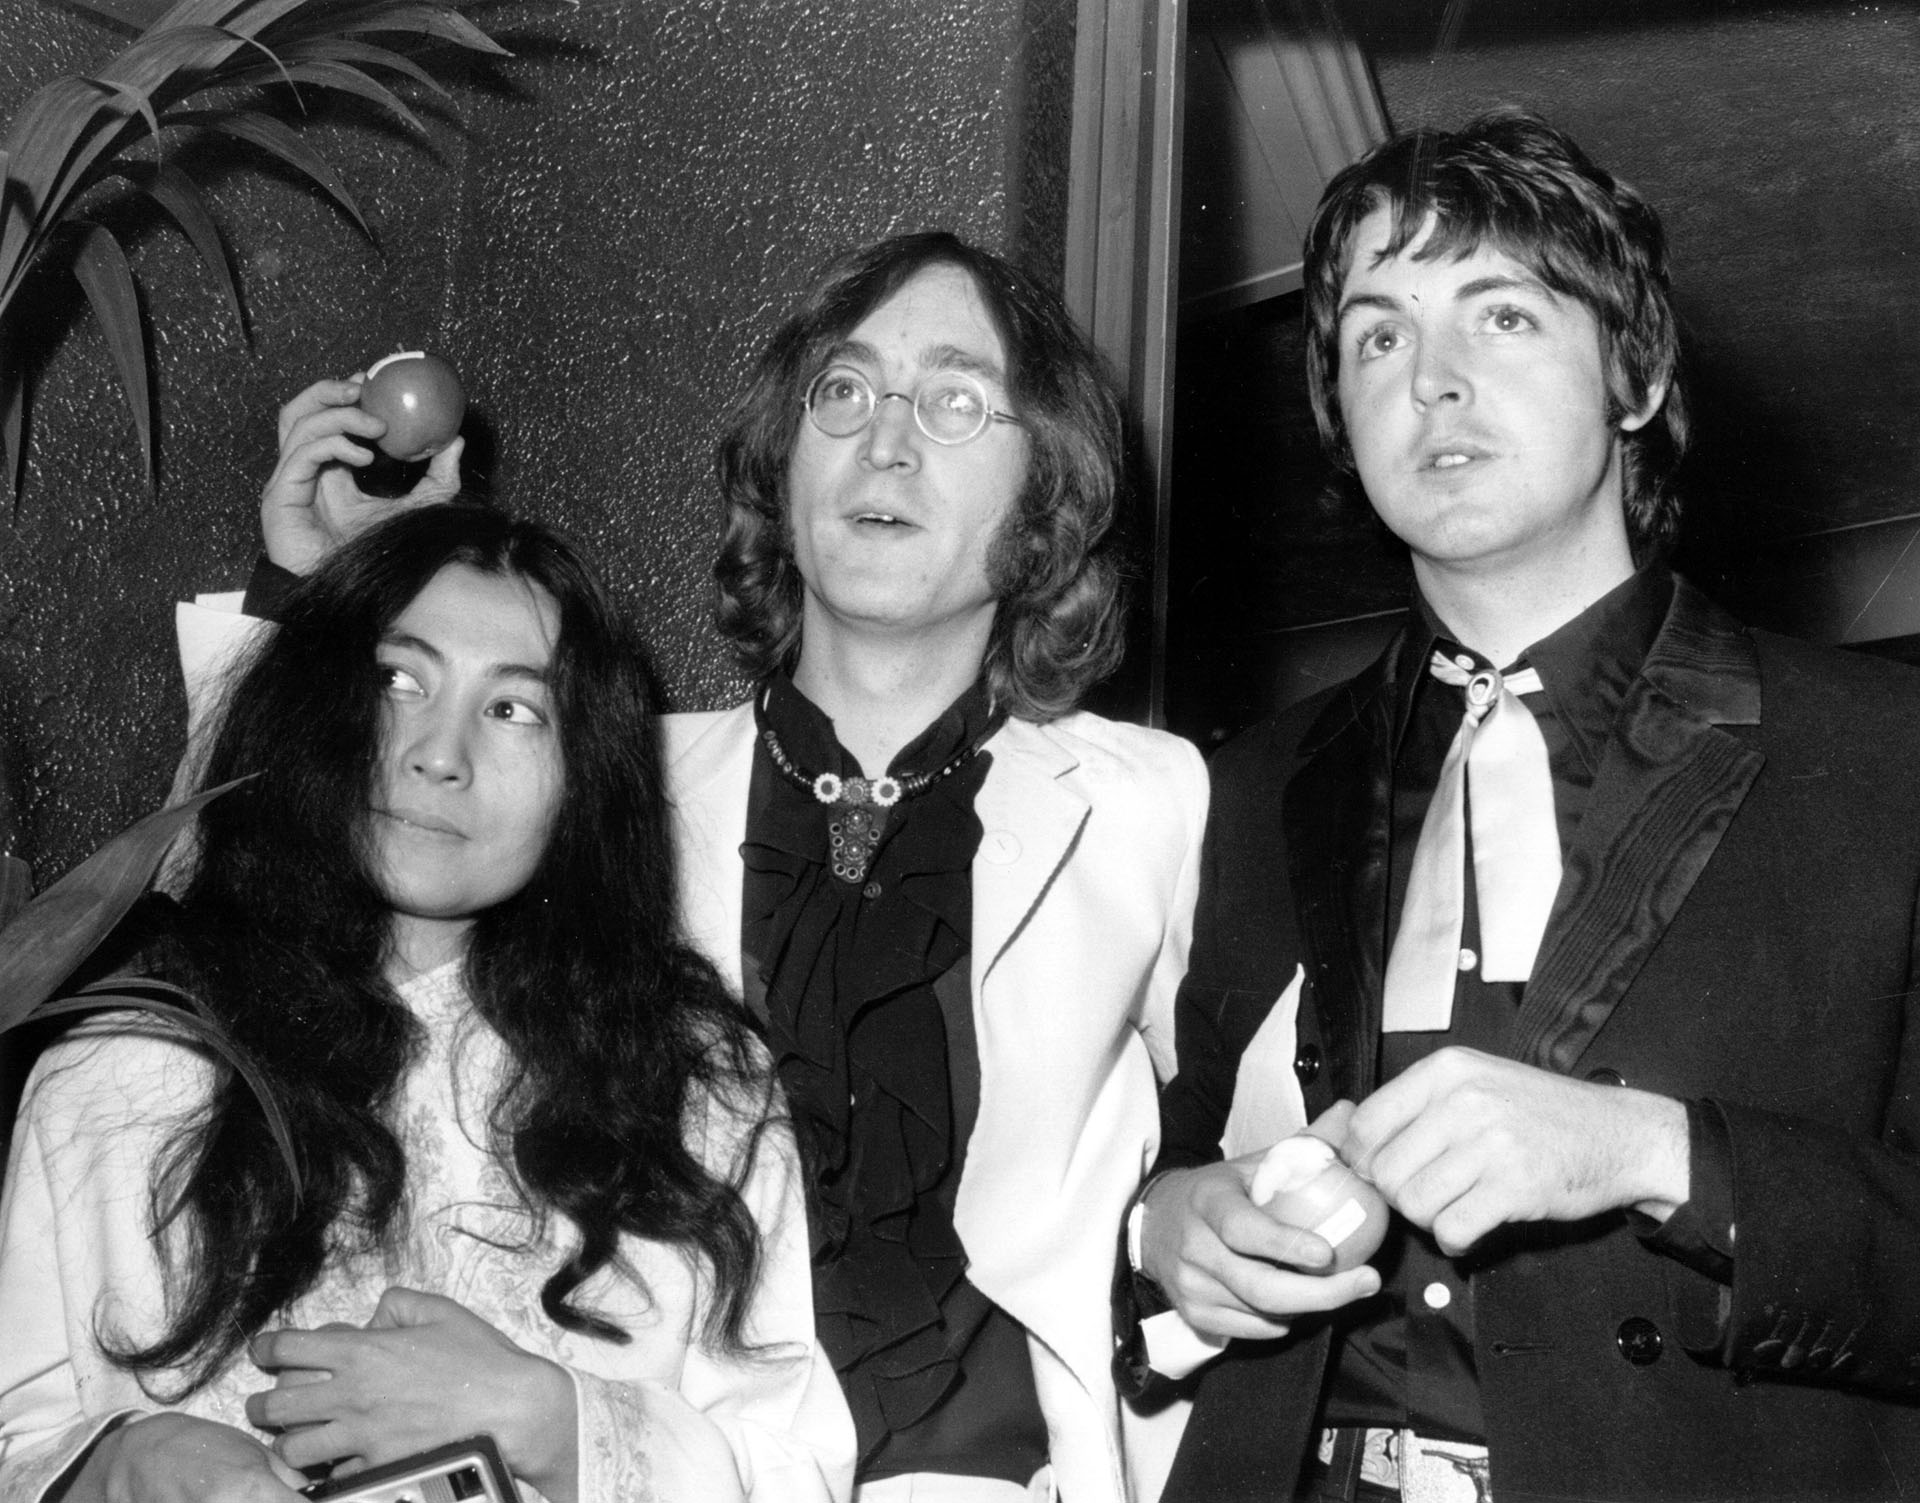 Junto a John Lennon y Paul McCartney en la presentación de la película "Yellow Submarine" en Londres, 1968 (Foto: Michael Webb/Keystone/Getty Images)